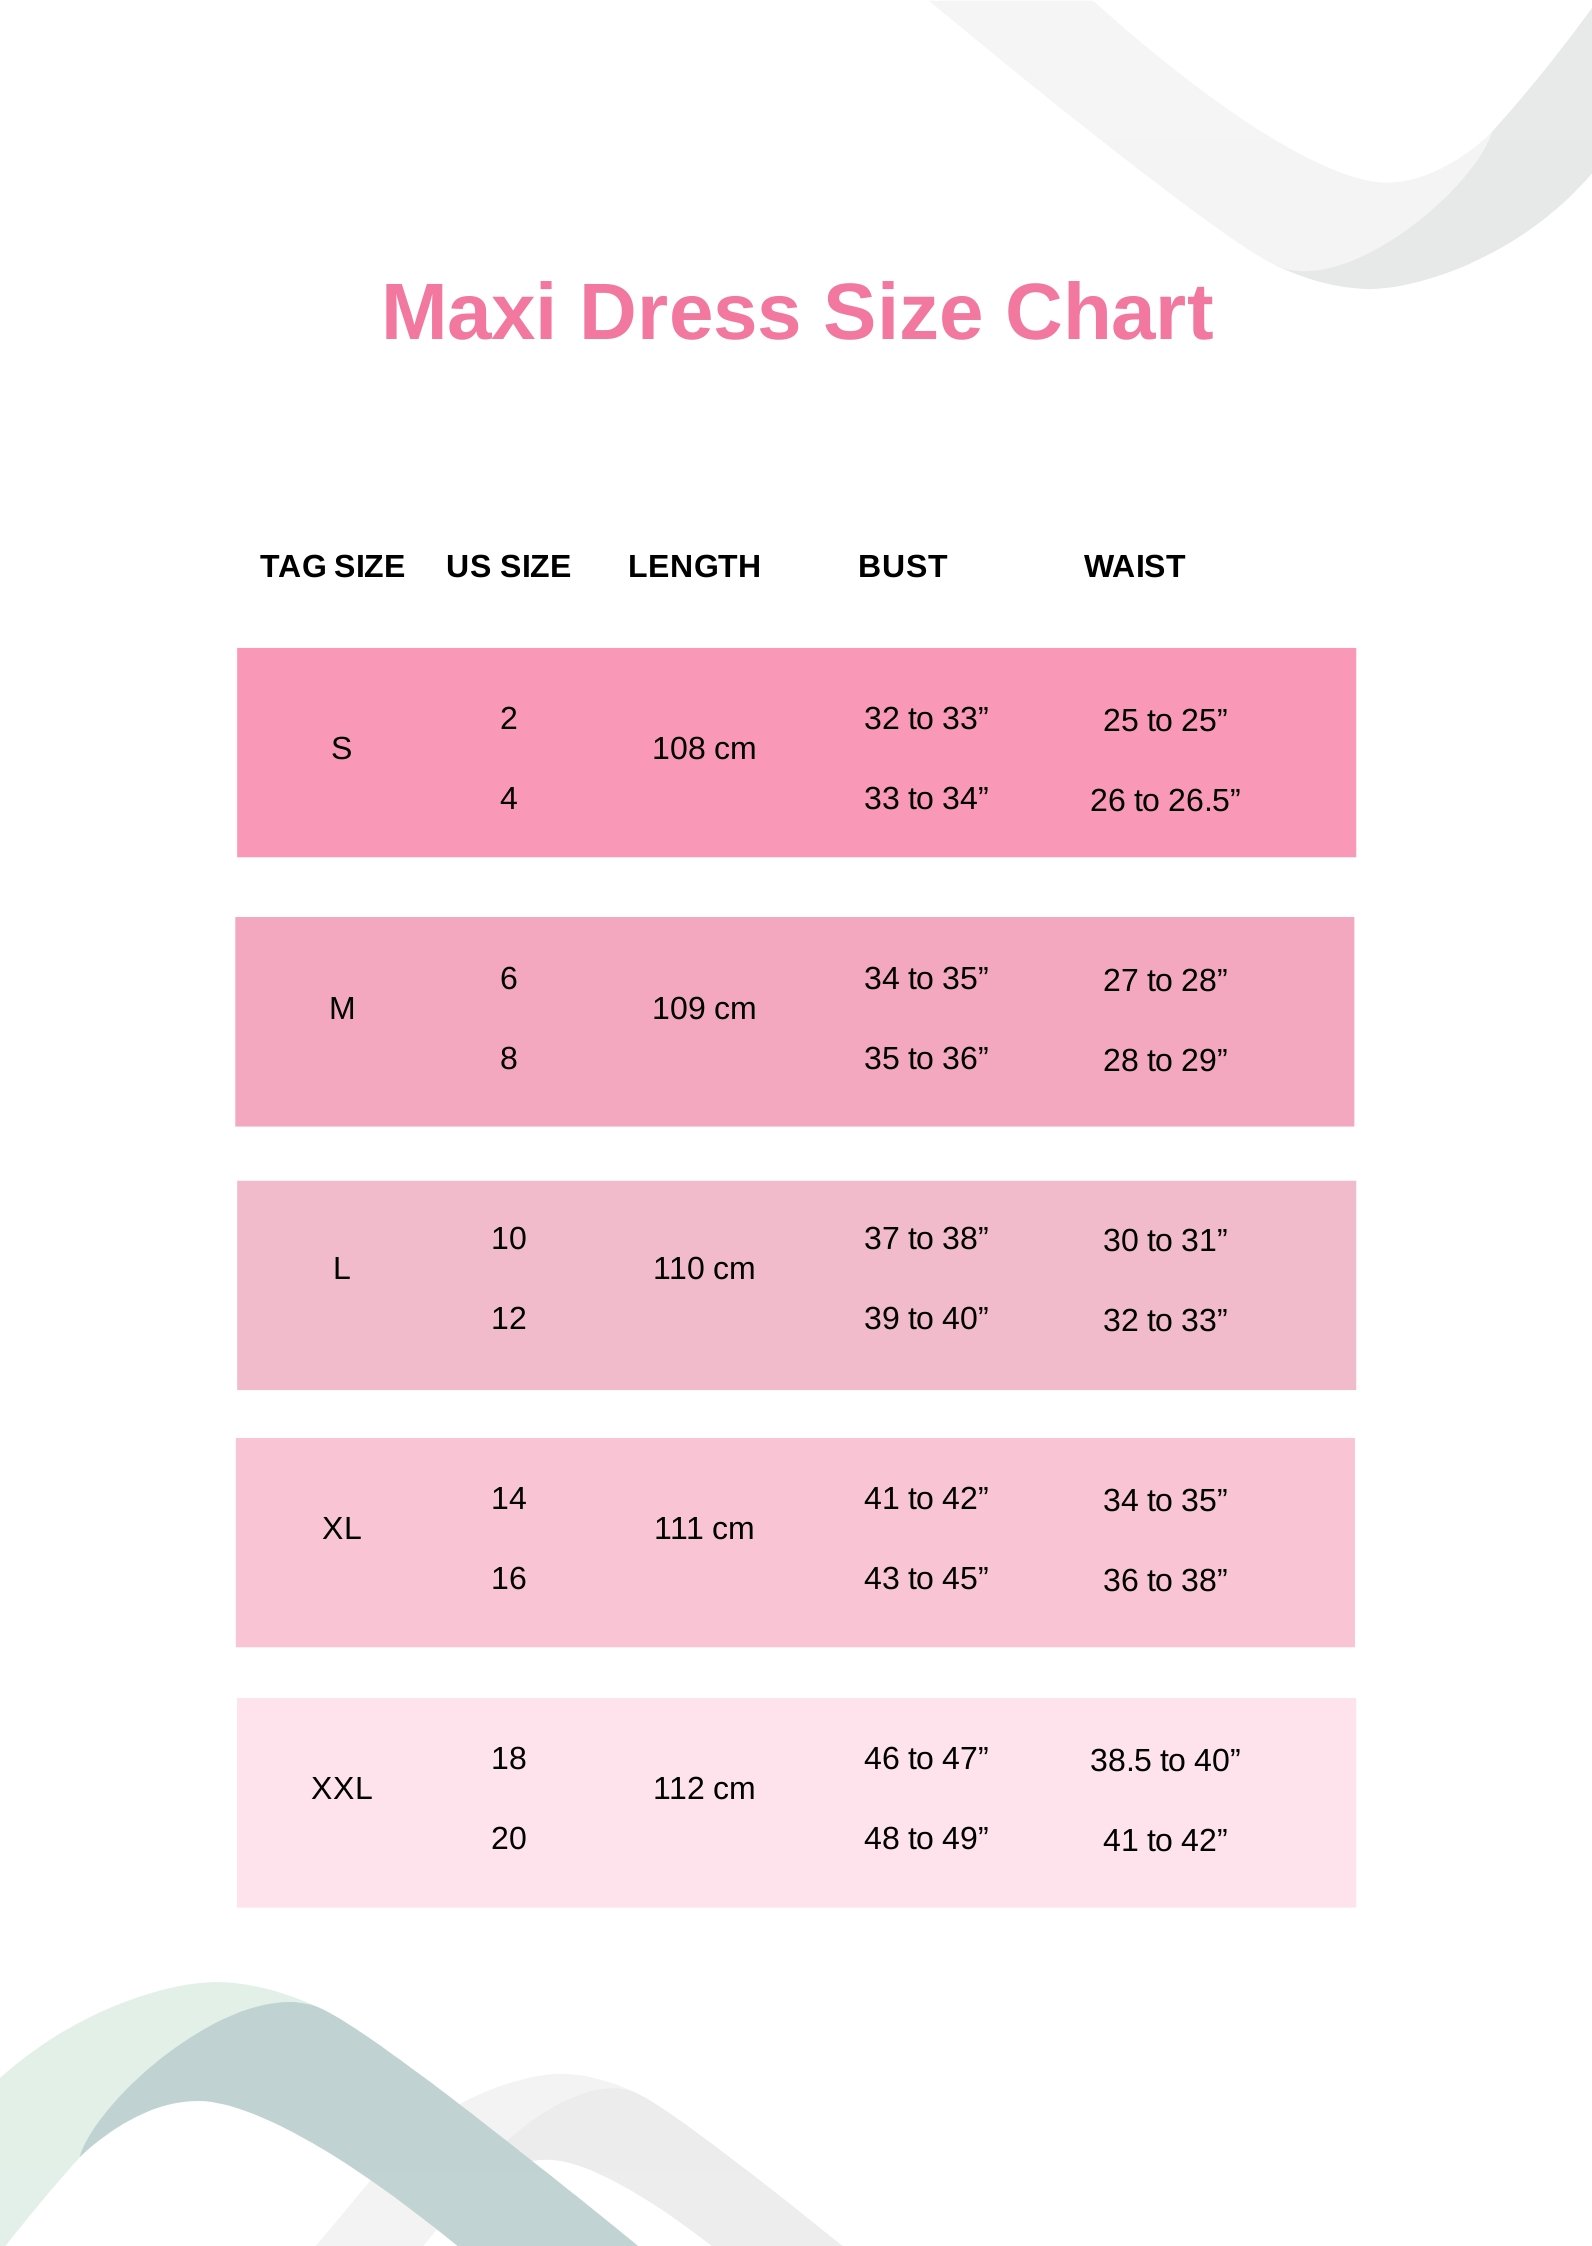 Maxi Dress Size Chart in PDF